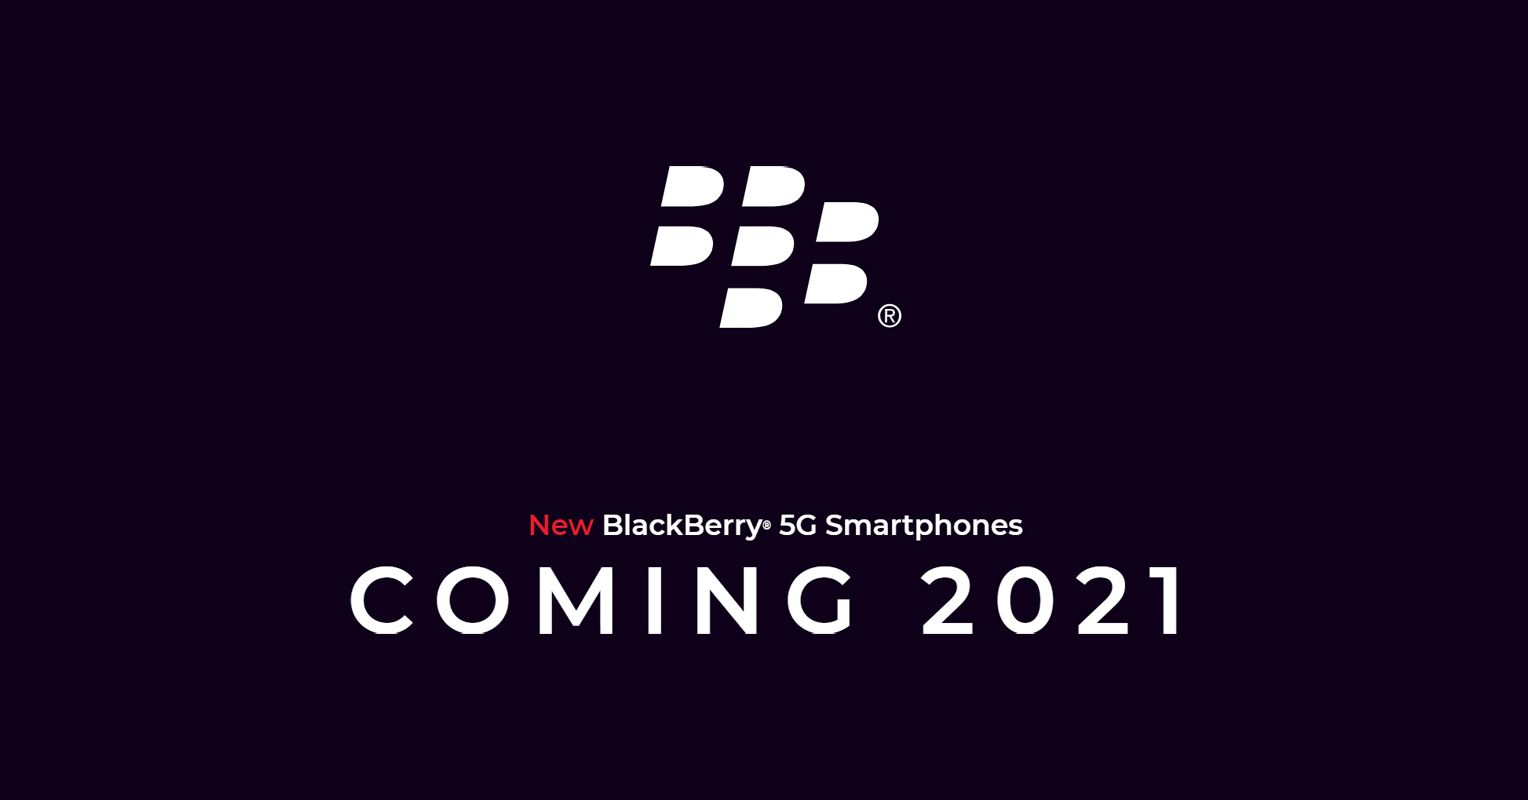 ขอพินหน่อยดิ… BlackBerry เตรียมเปิดตัวสมาร์ทโฟน 5G ที่มาพร้อมคีย์บอร์ด QWERTY ในปี 2021